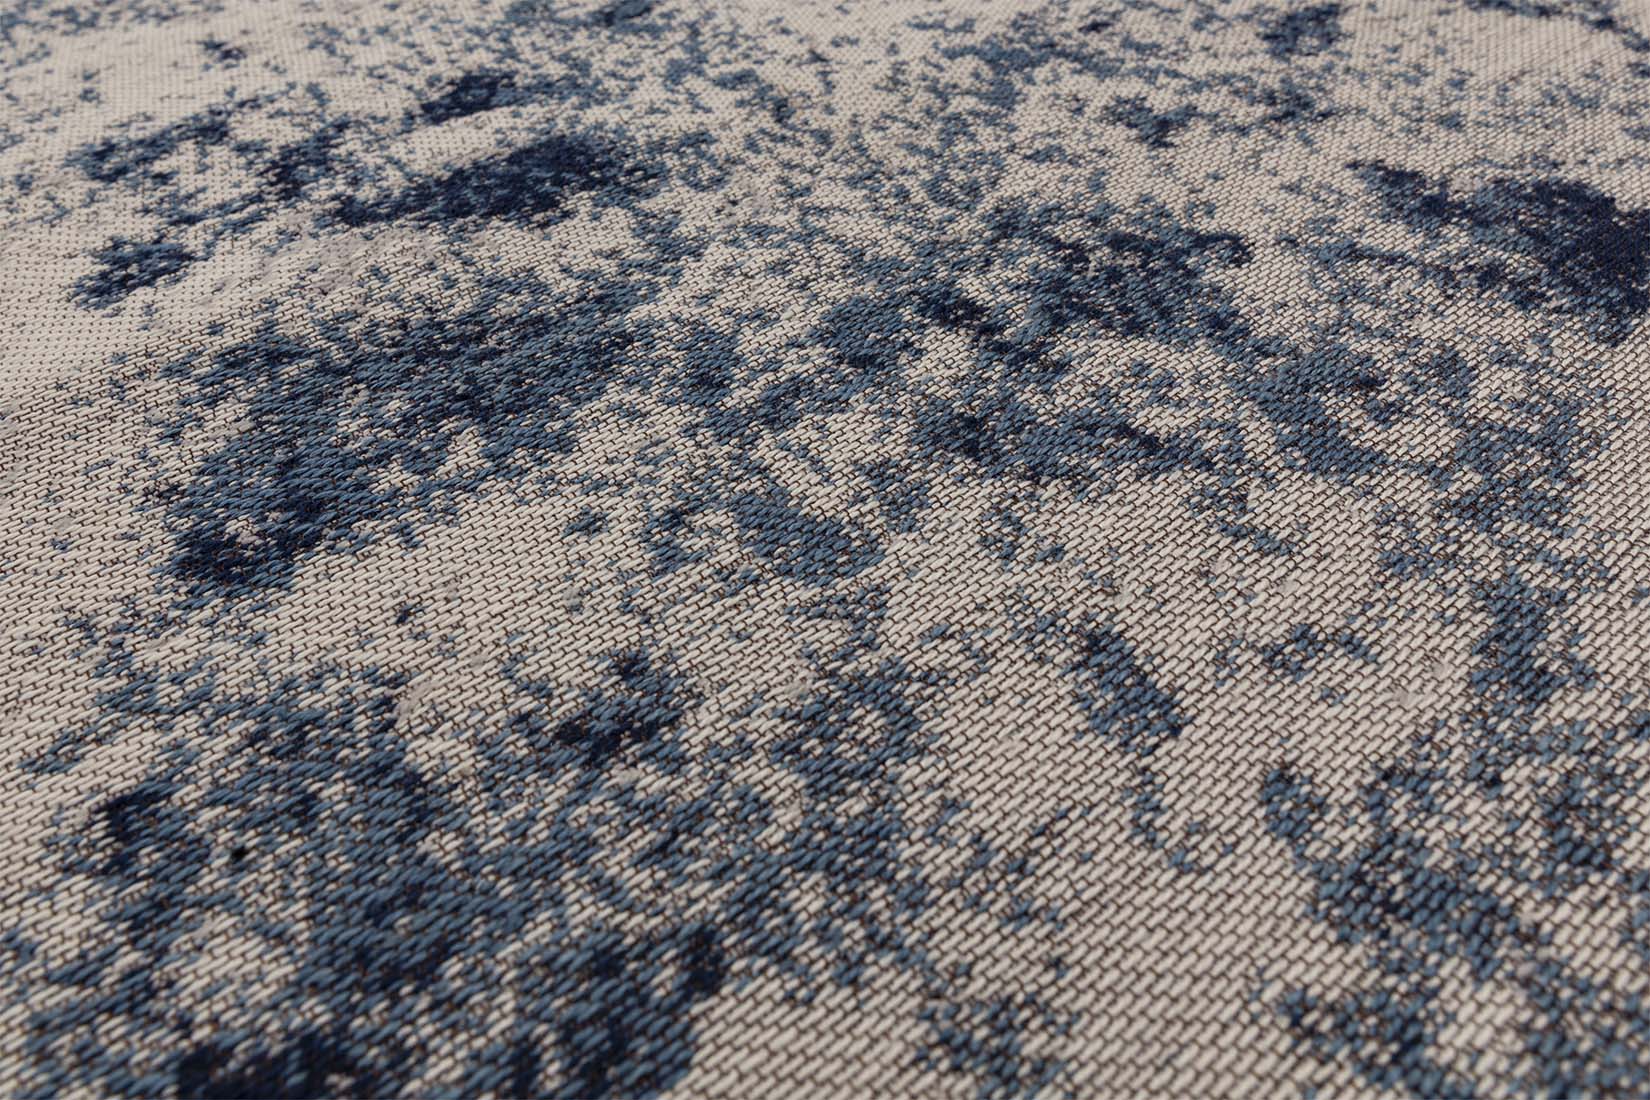 abstract indoor/outdoor rug in blue
